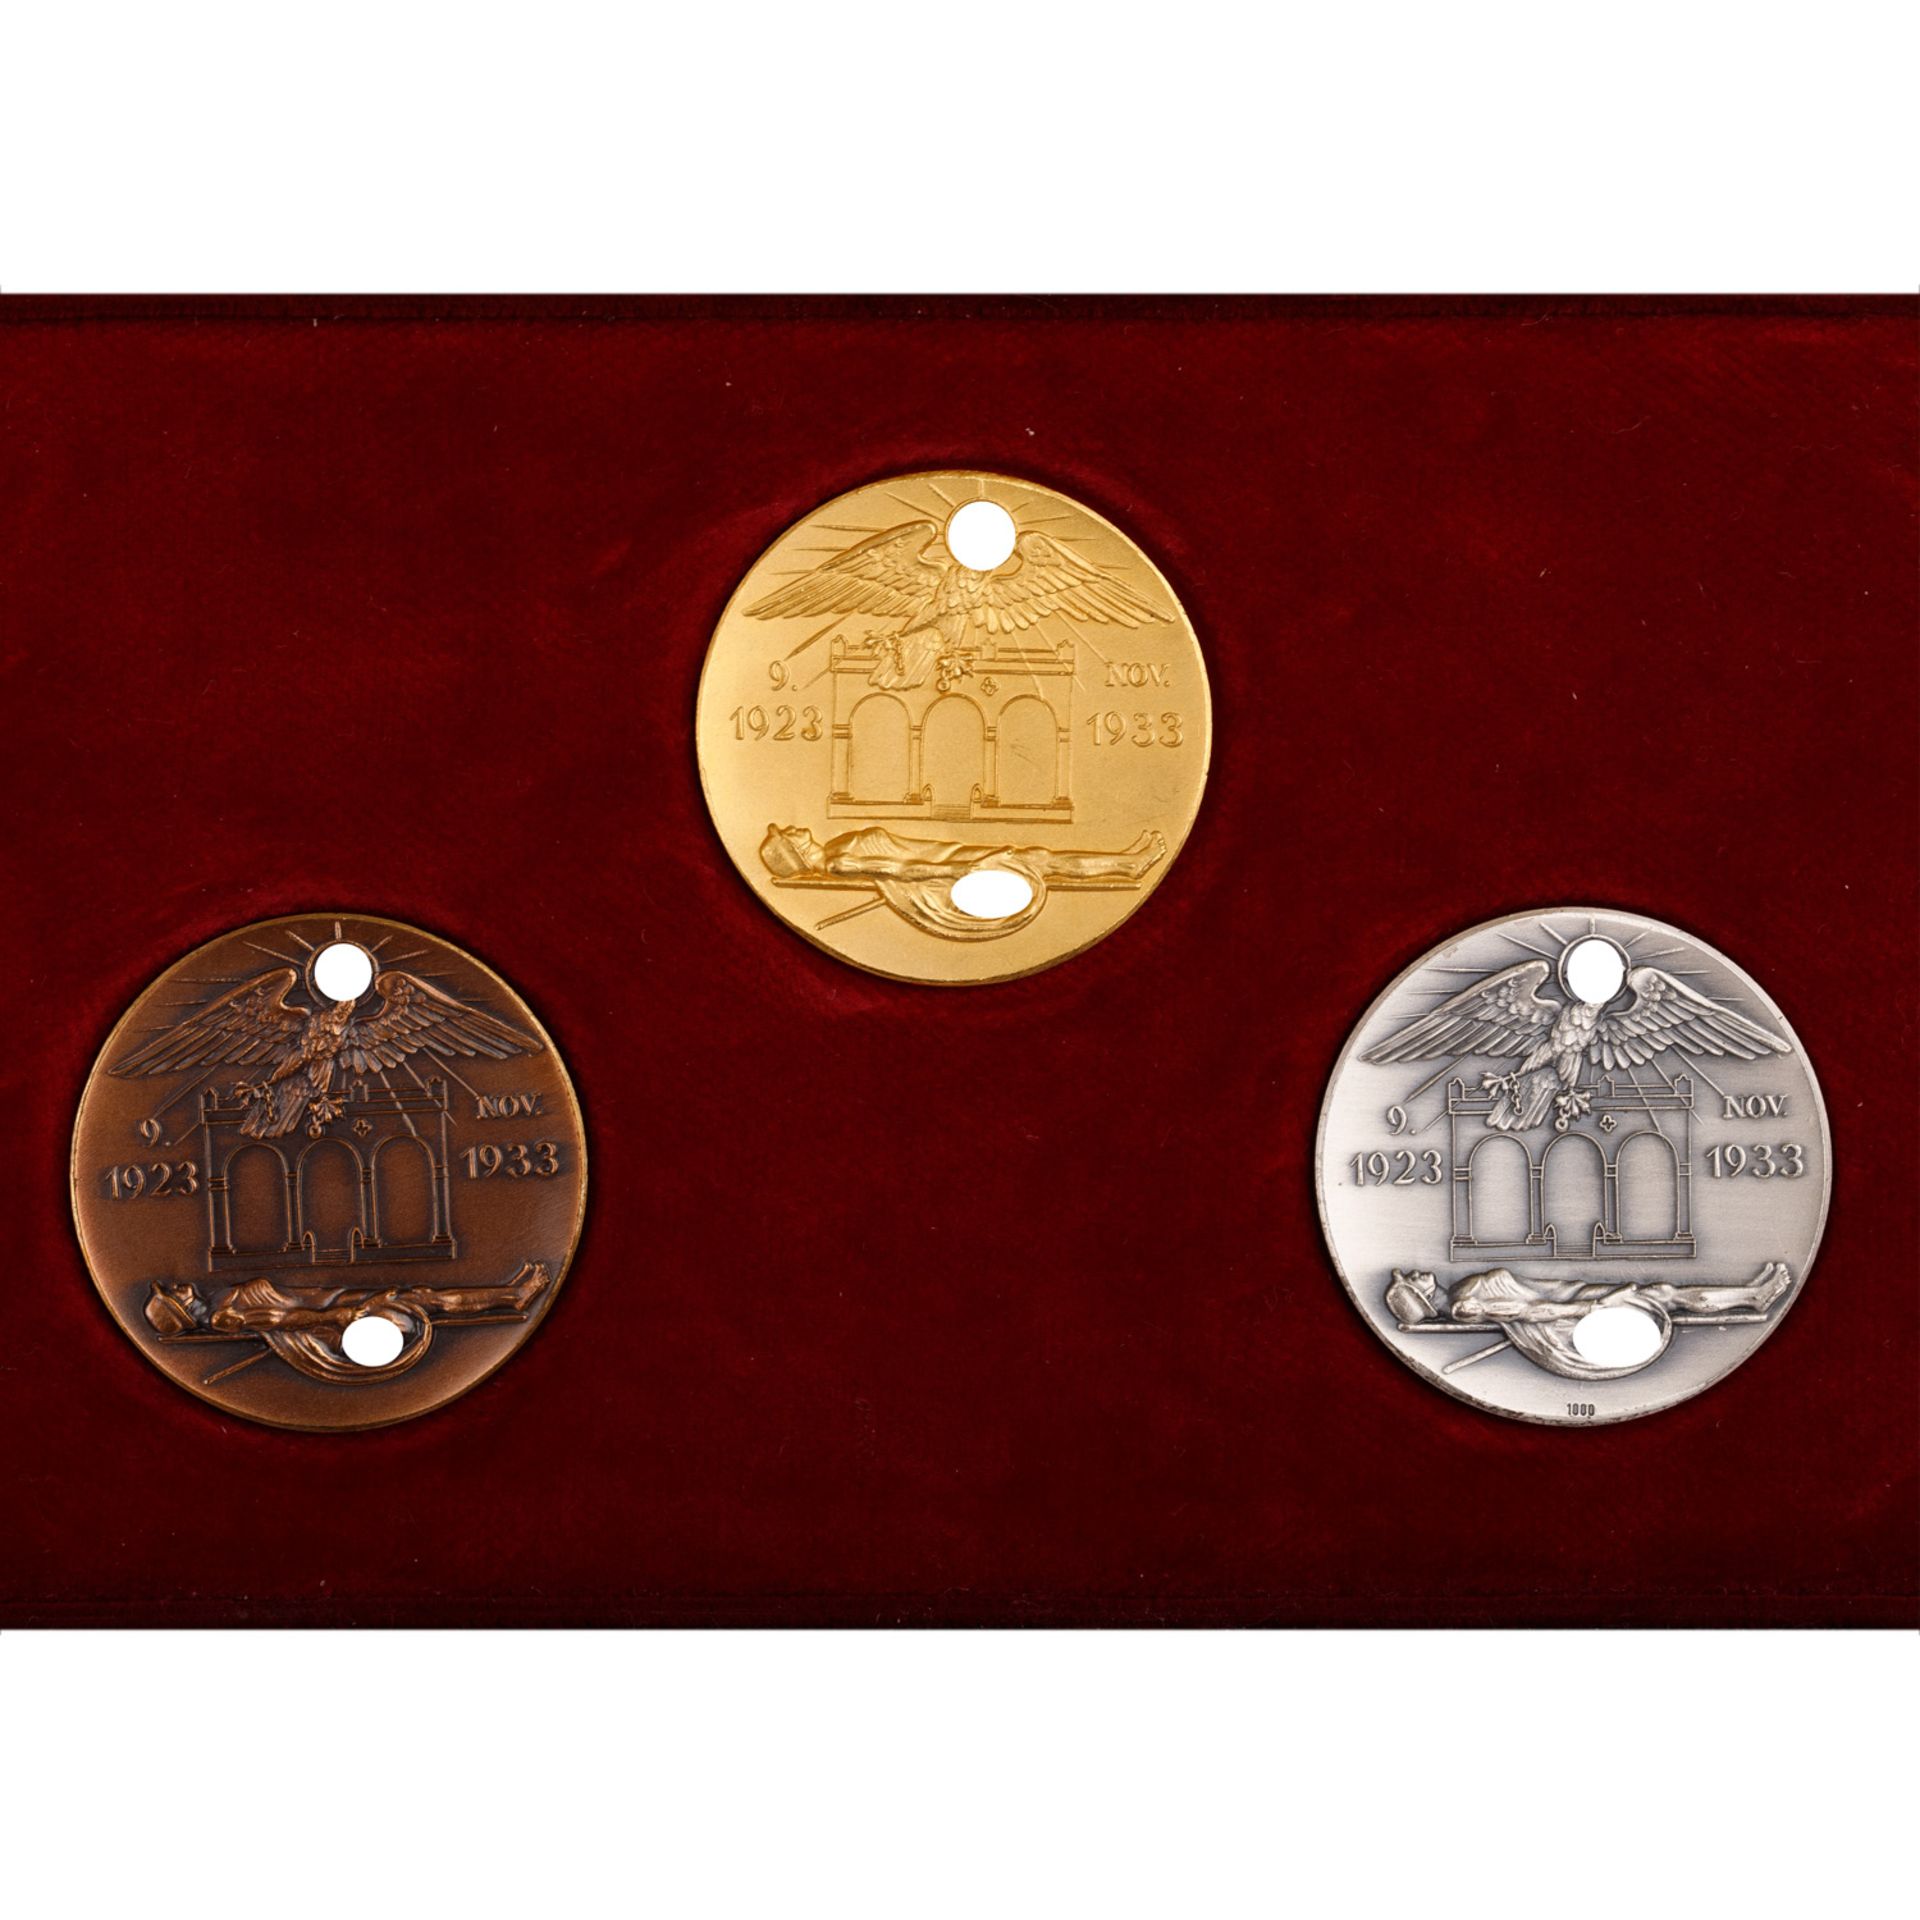 Deutsches Reich 1933-1945 - Extrem selten als Set angebotene Medaillen-Trilogie in GOLD (999), SILBE - Bild 3 aus 6